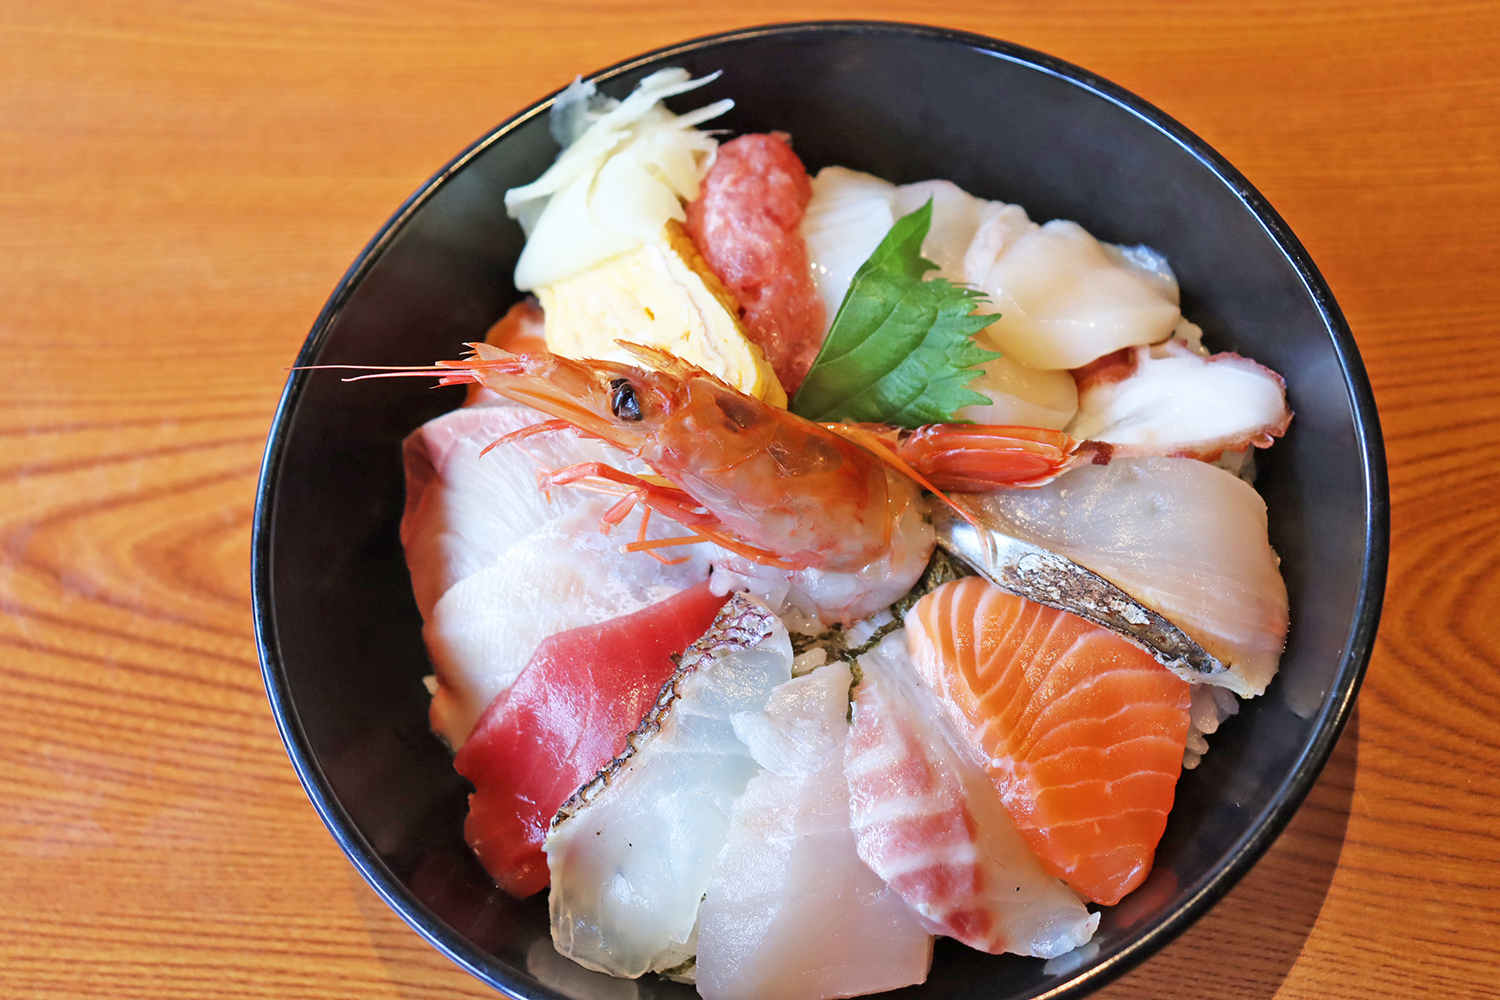 大きな丼にぎっしりと並ぶ刺身の豊富さは、まさしく”特選“海鮮丼だ。